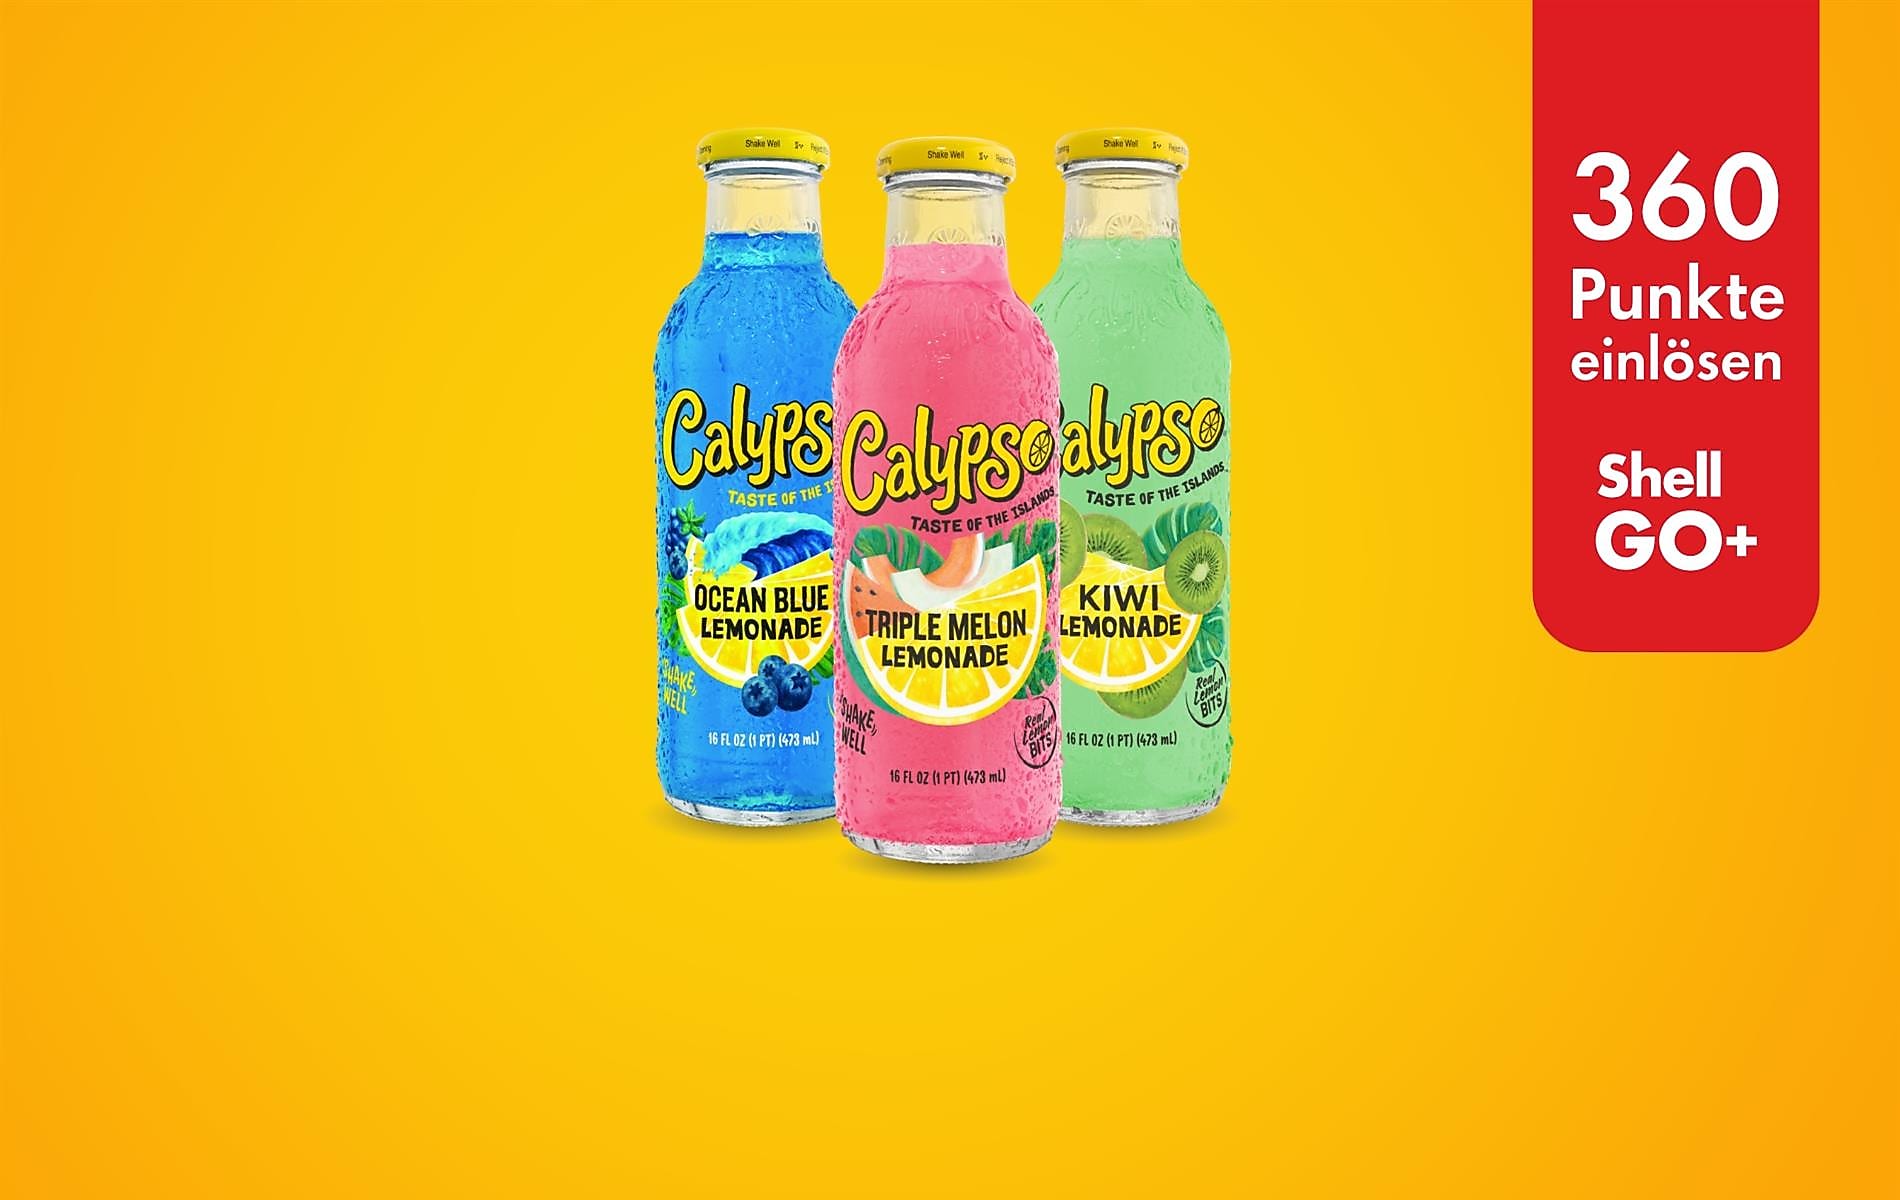 Shell Go+ PunkteDeal: Calypso Lemonade um 360 Pkt.